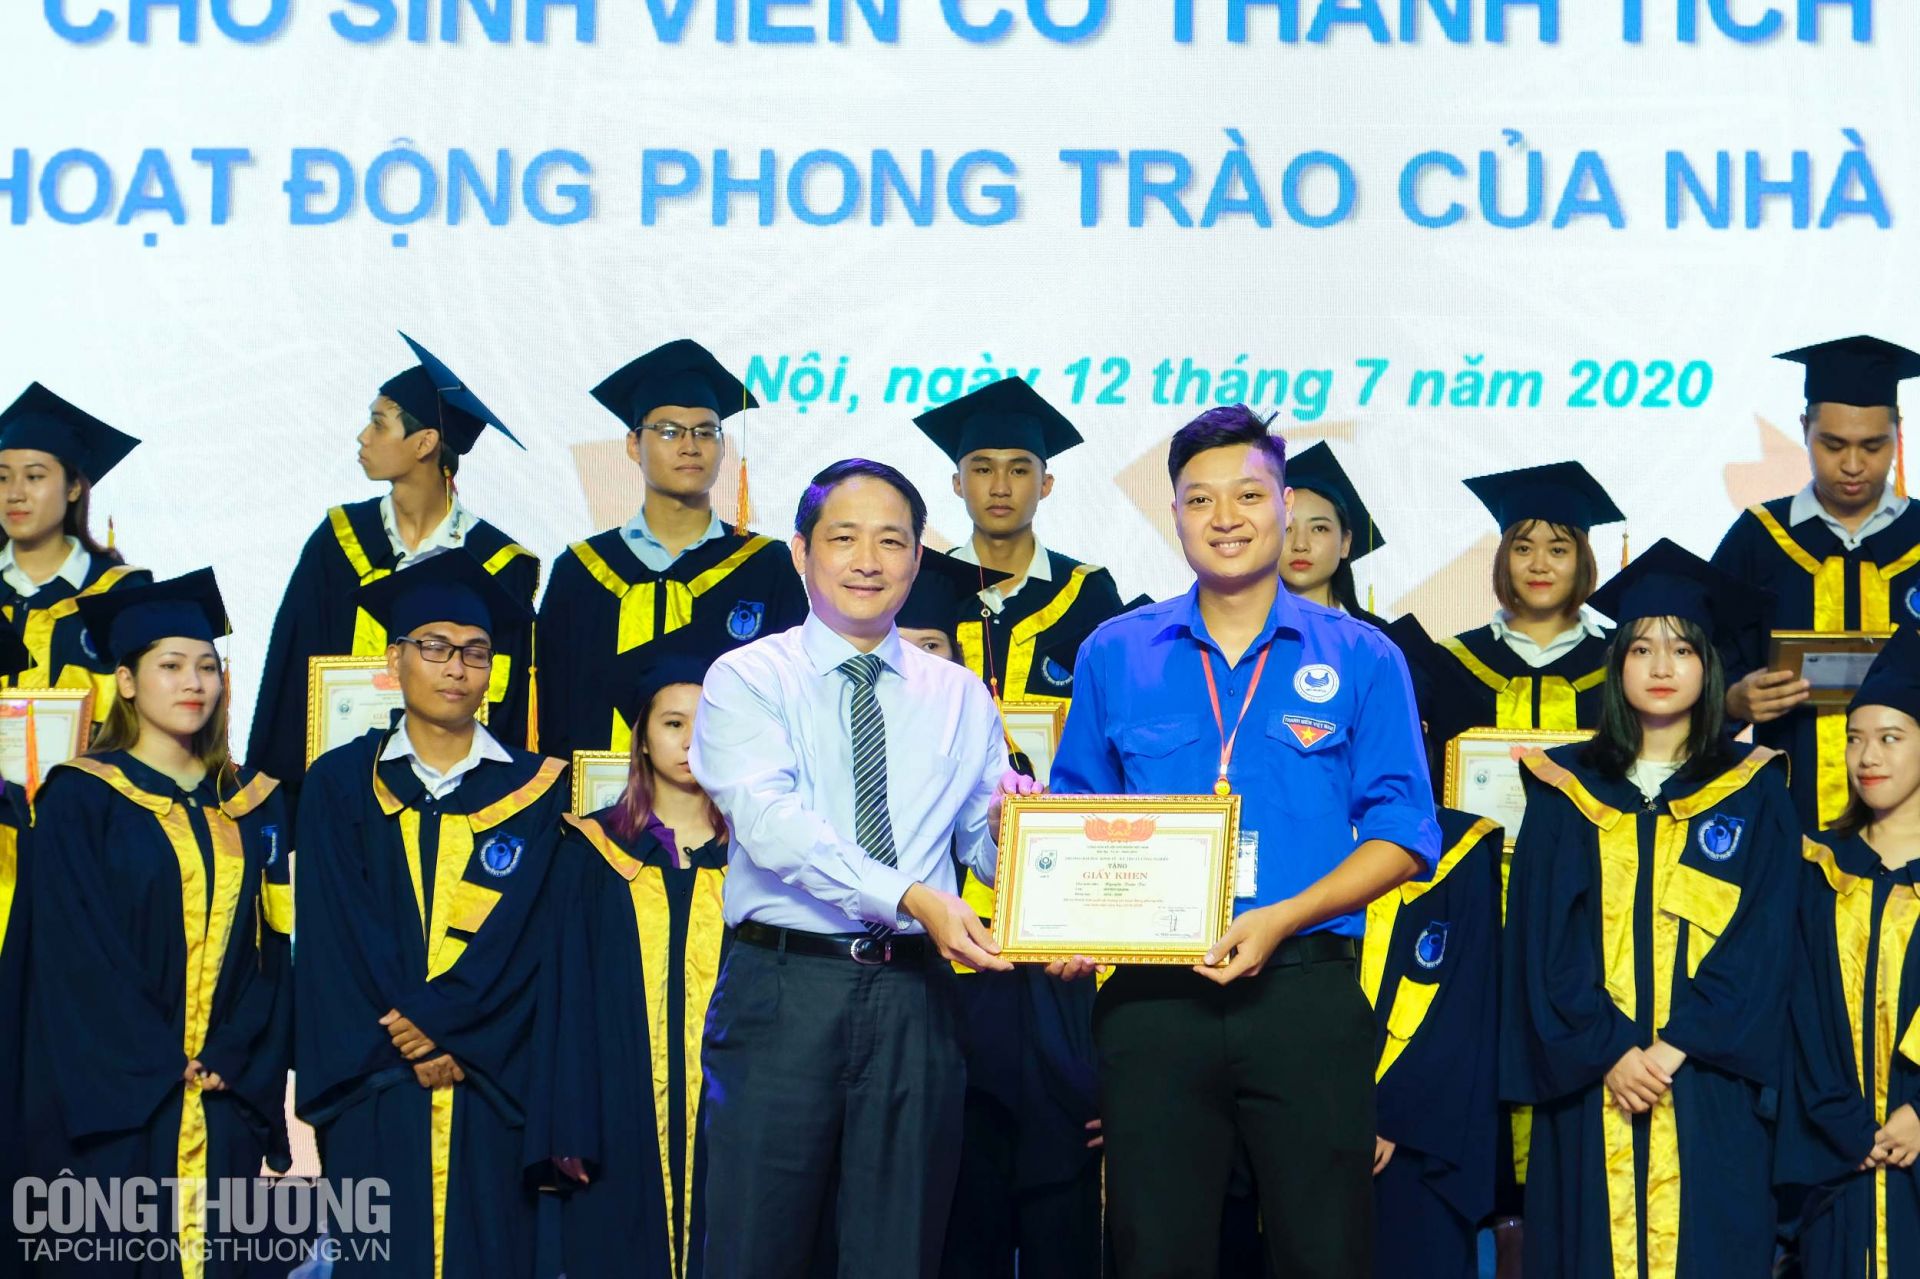 Ông Nguyễn Hoàng Giang - Phó Vụ trưởng Vụ Kế hoạch, Bộ Công Thương trao Giấy khen cho các sinh viên UNETI có nhiều đóng góp trong hoạt động phong trào của Nhà trường